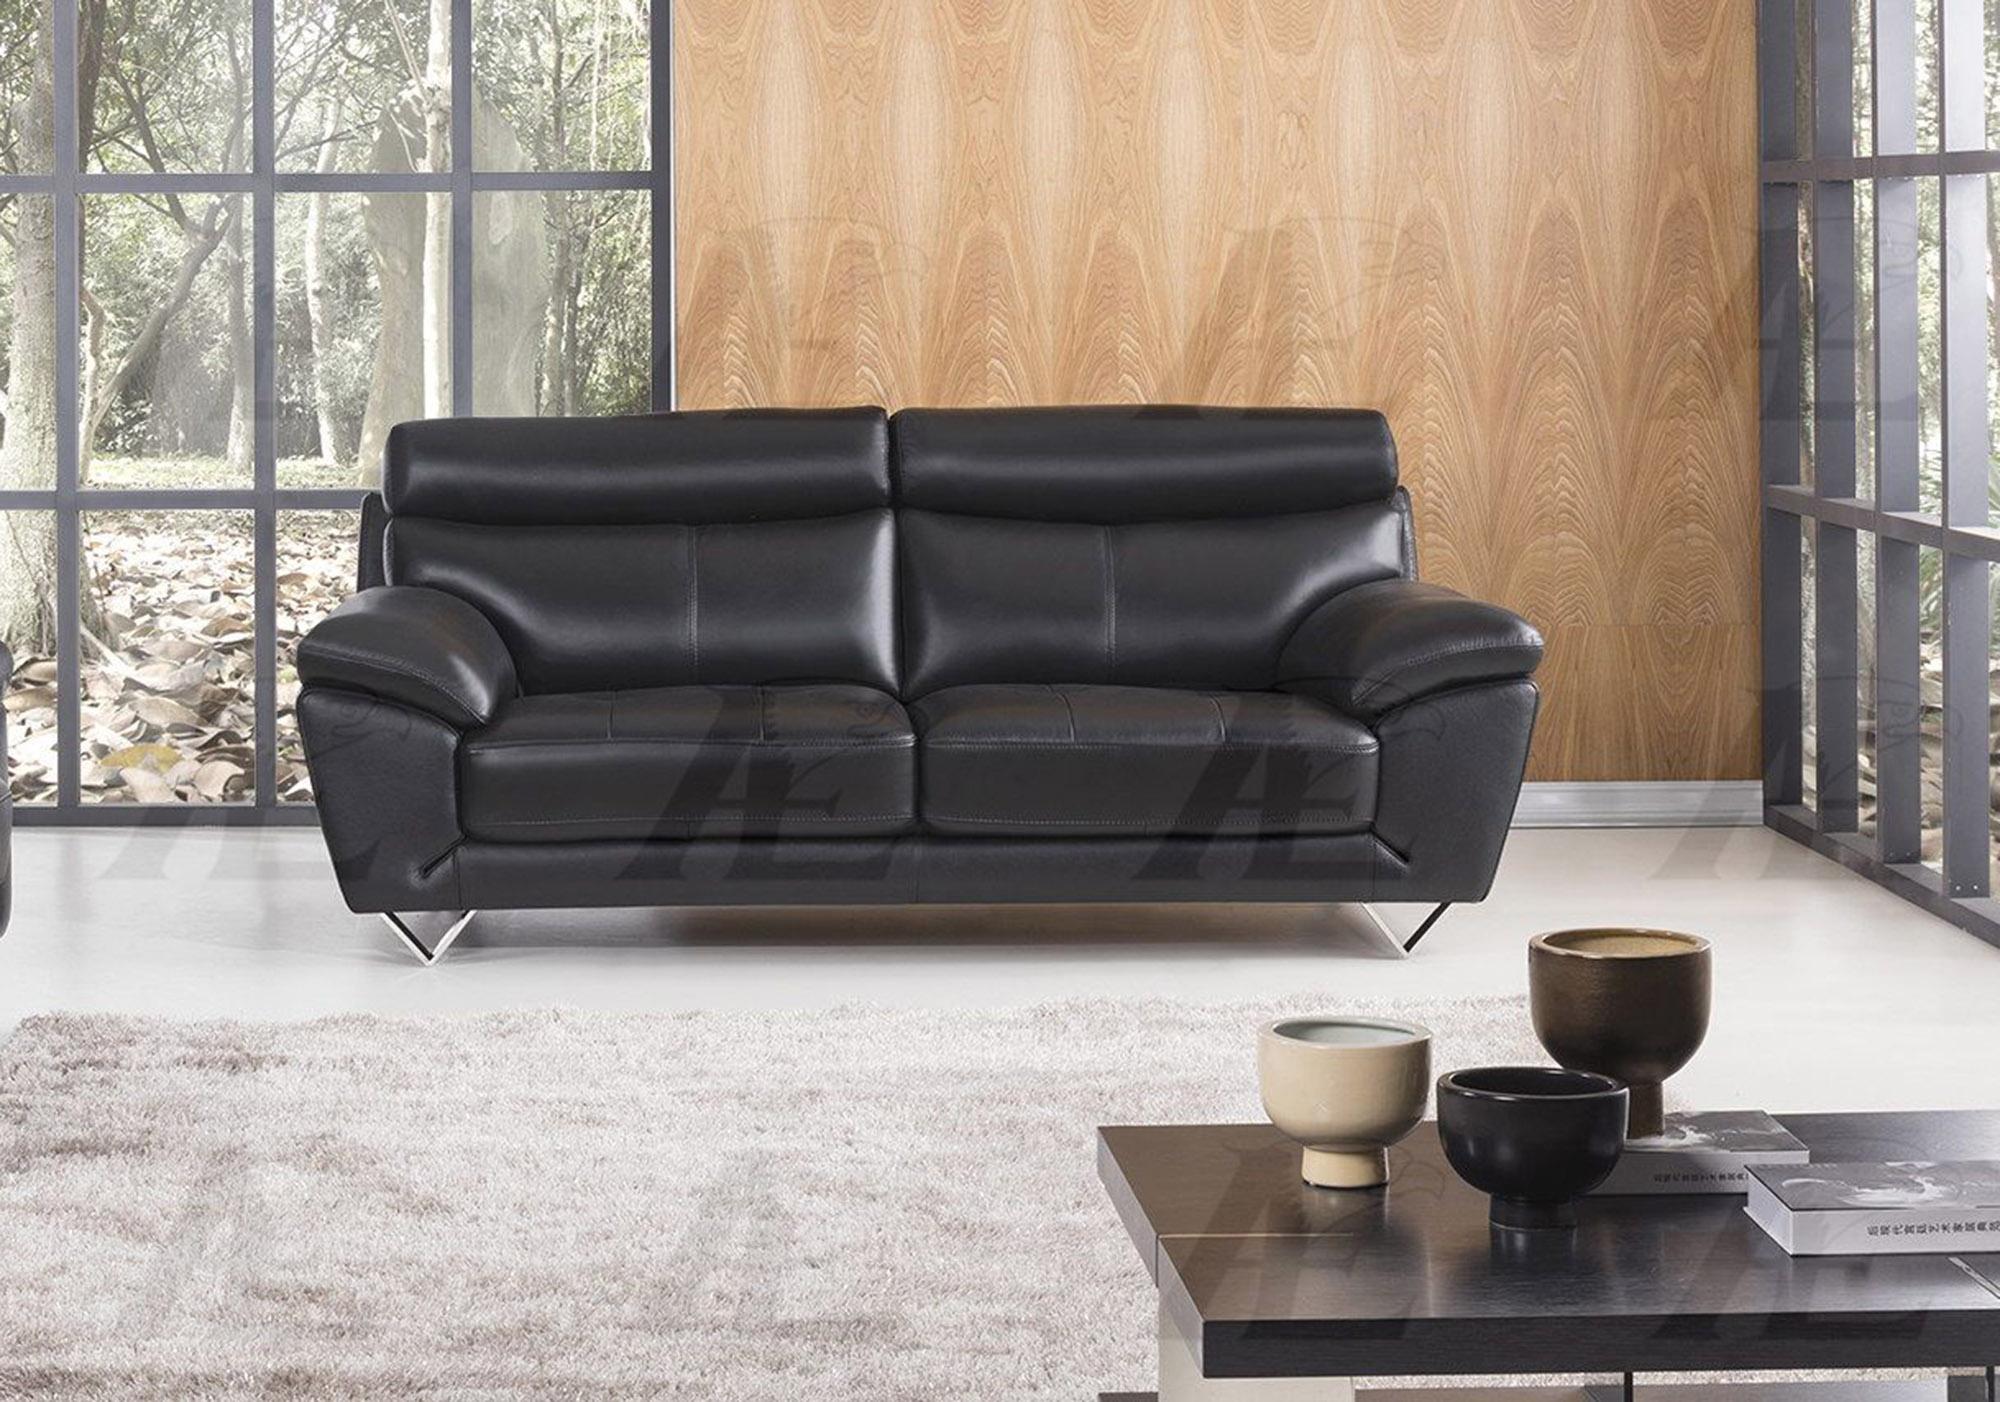 

    
American Eagle Furniture EK078-BK-SF Sofa Black EK078-BK-SF
